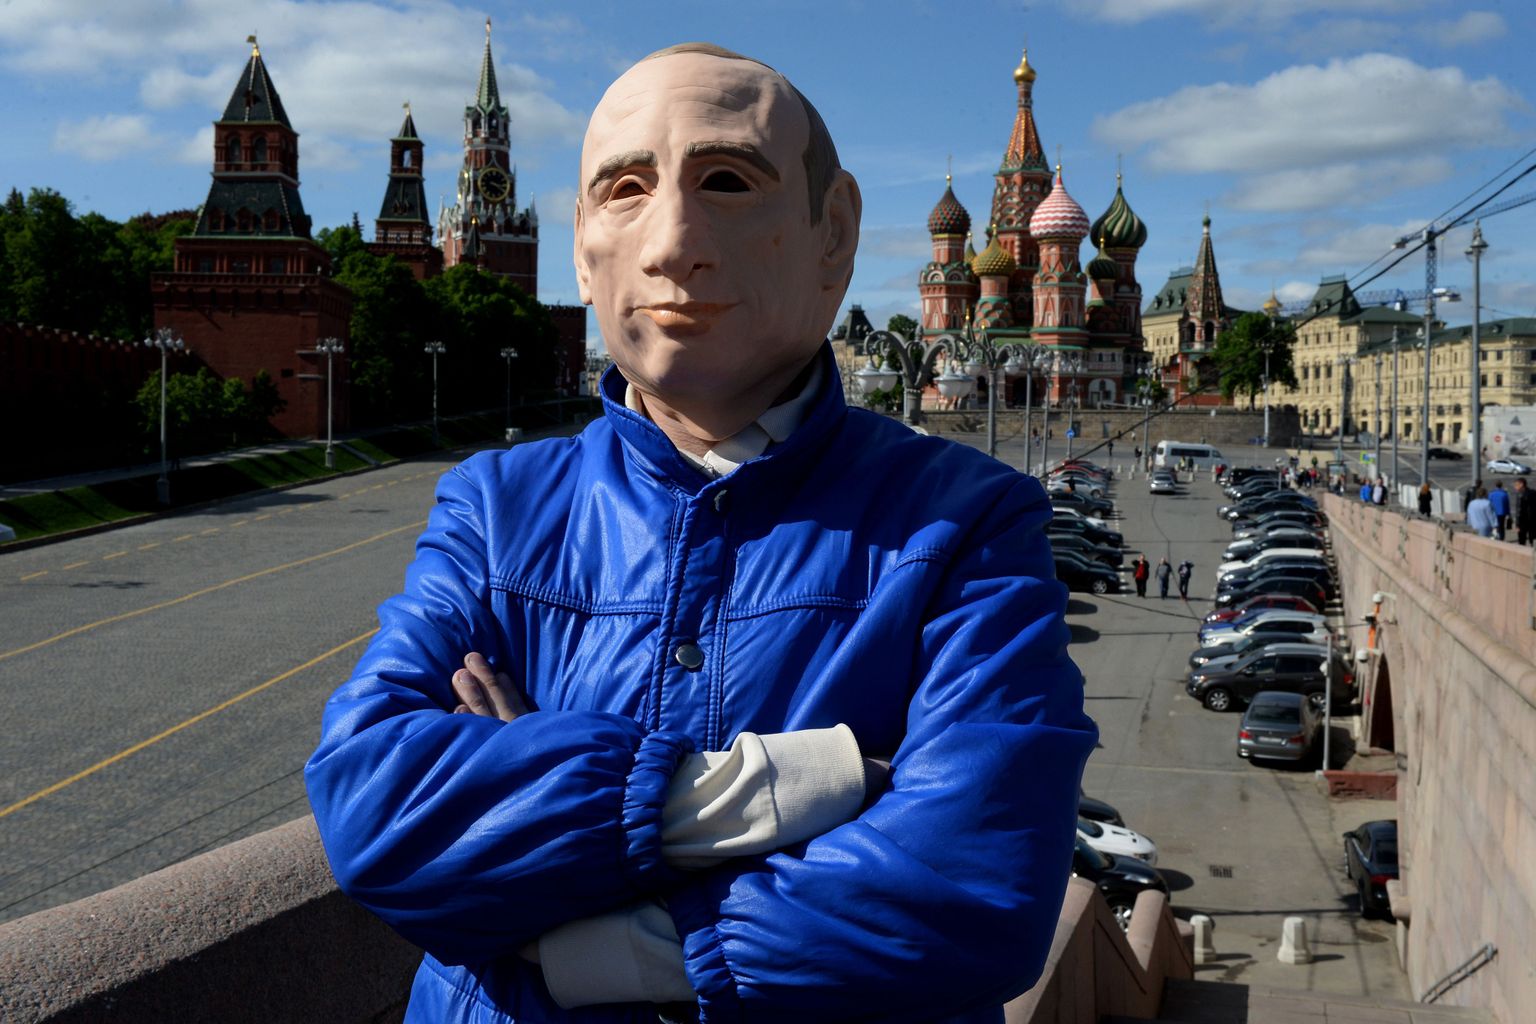 Venemaa opositsionäär Roman Roslovtsev kandmas Vladimir Putini maski